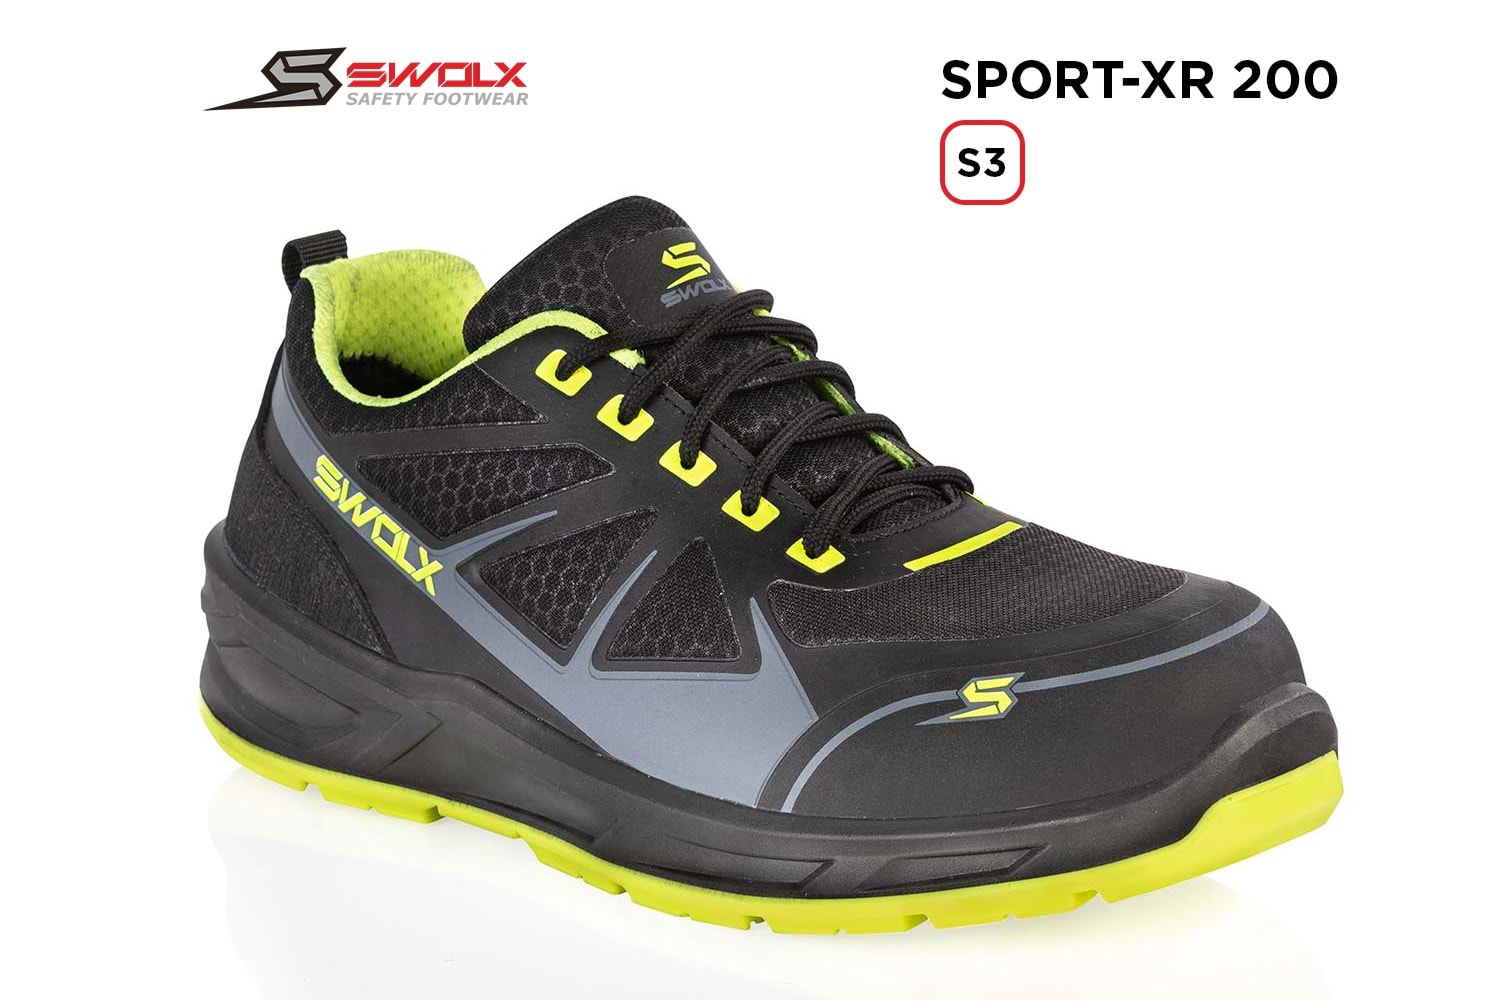 Swolx İş Ayakkabısı - Sport-Xr 200 S3 - 42